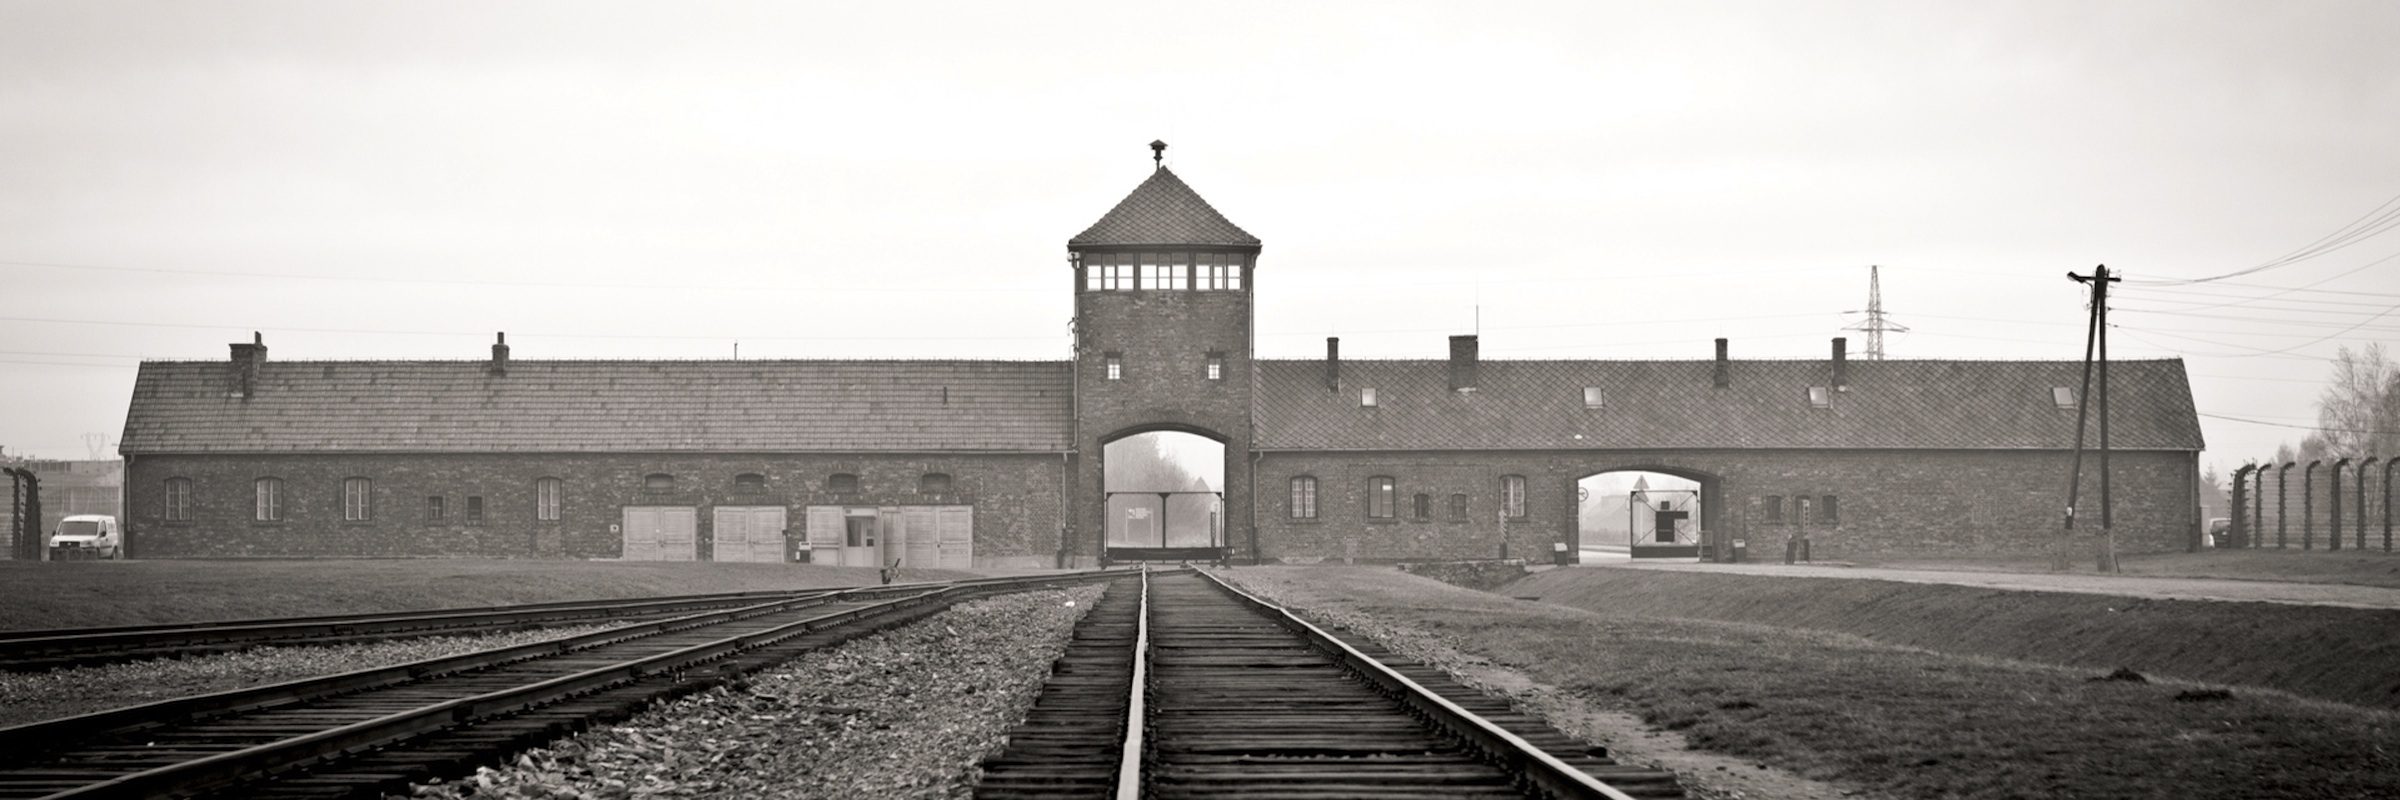 Birkenau_Auschwitz_Polonia_Cracovia